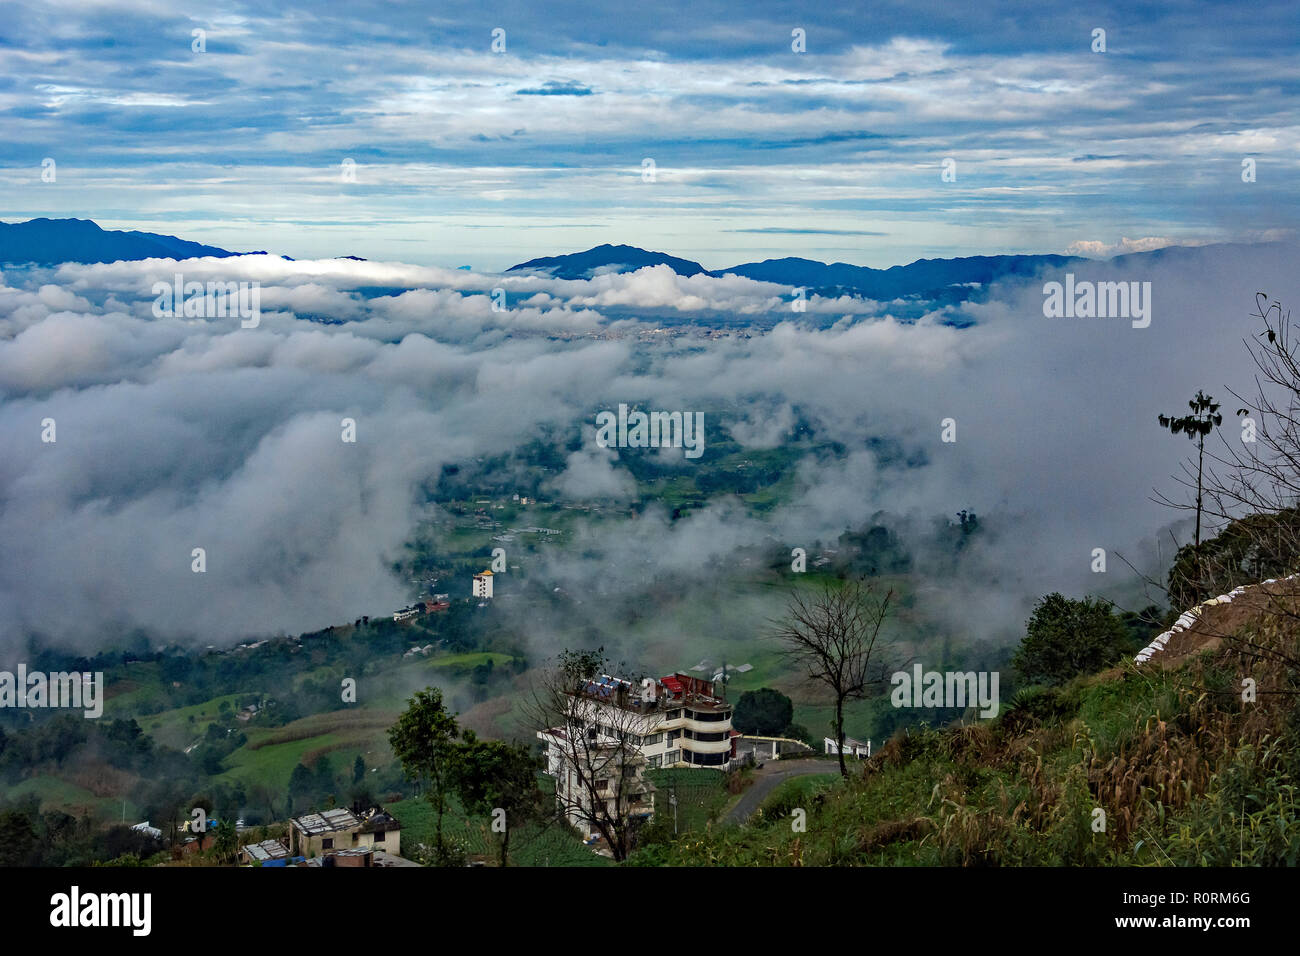 Über den Wolken am frühen Morgen in den Ausläufern des Himalaya ausserhalb von Kathmandu, Nepal. Stockfoto